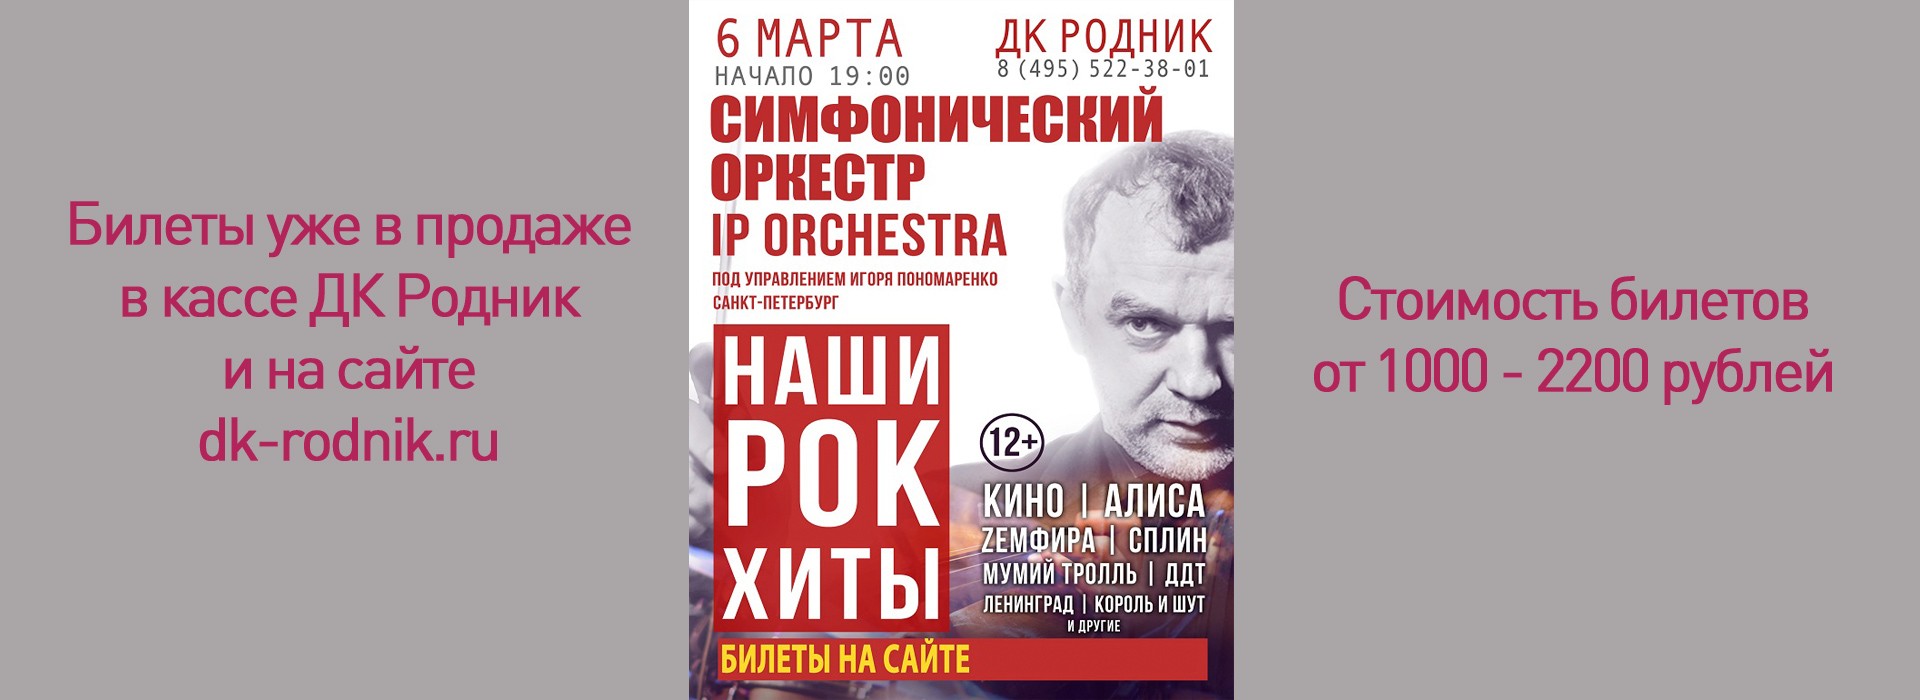 Концерт симфонического оркестра IP Orchestra